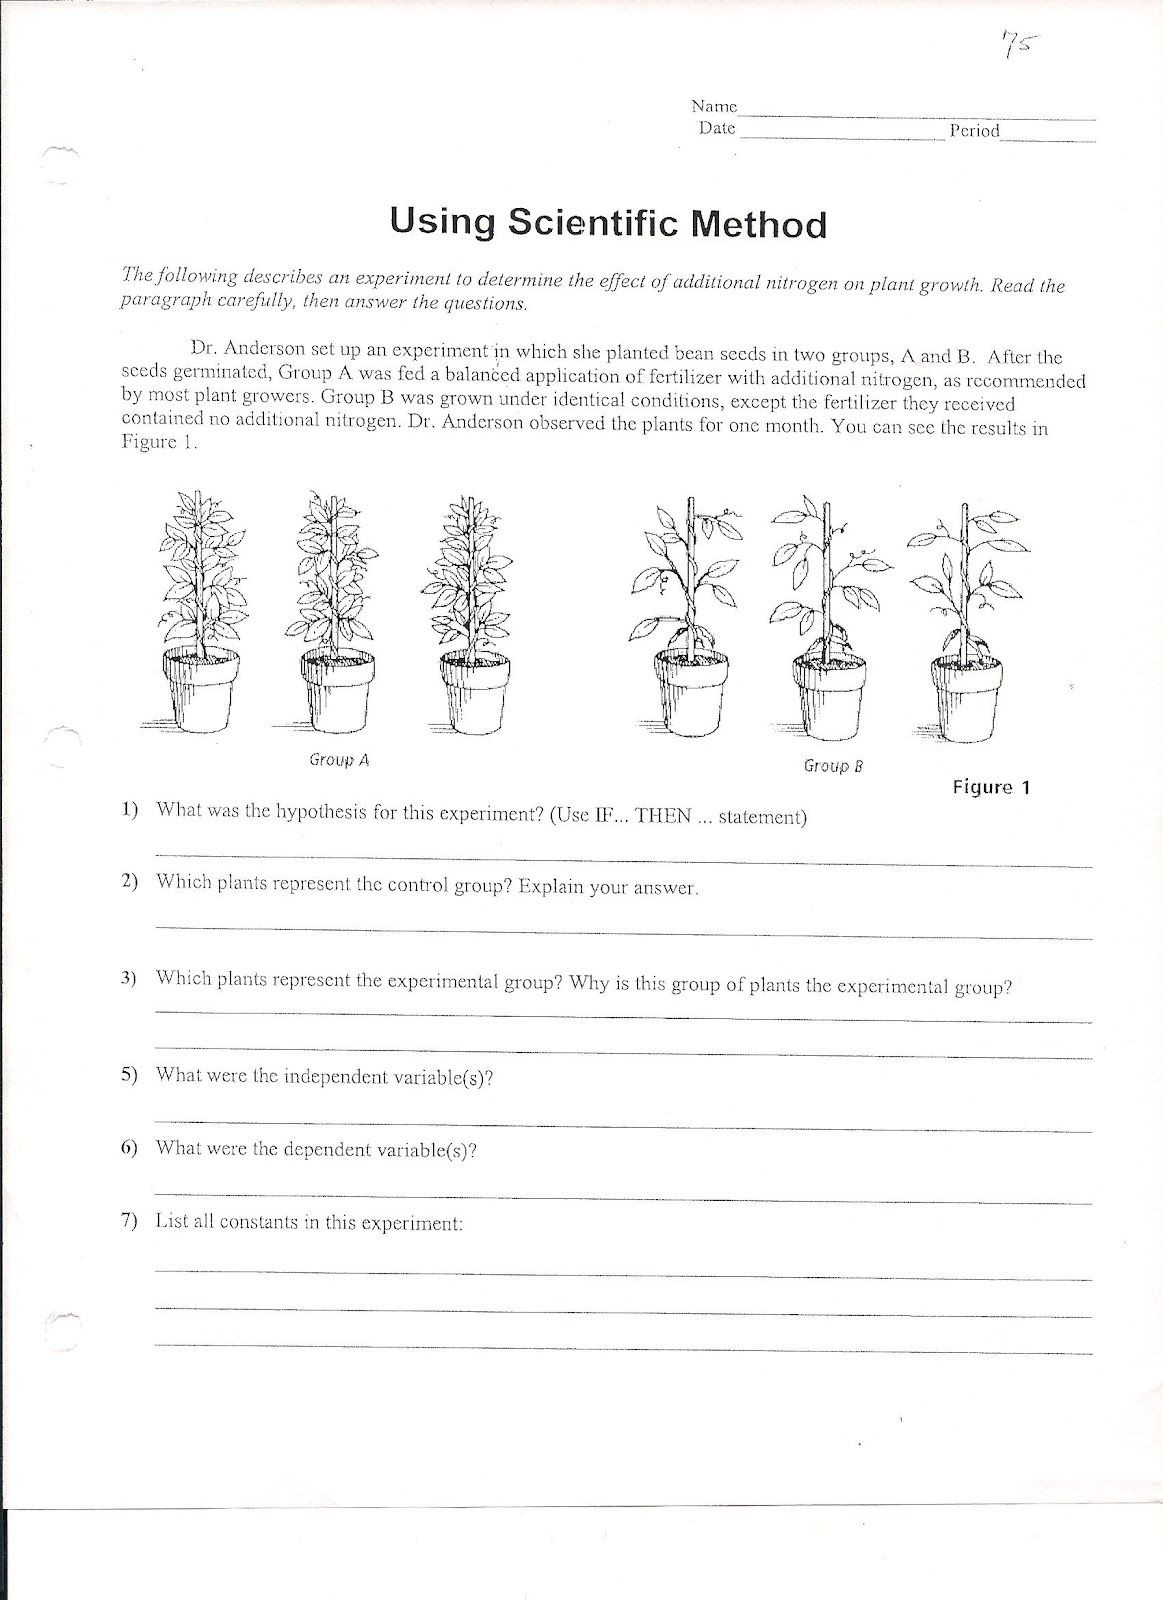 Scientific Method Worksheet High School Using Scientific Method Worksheet 1 1631 600 Pixels